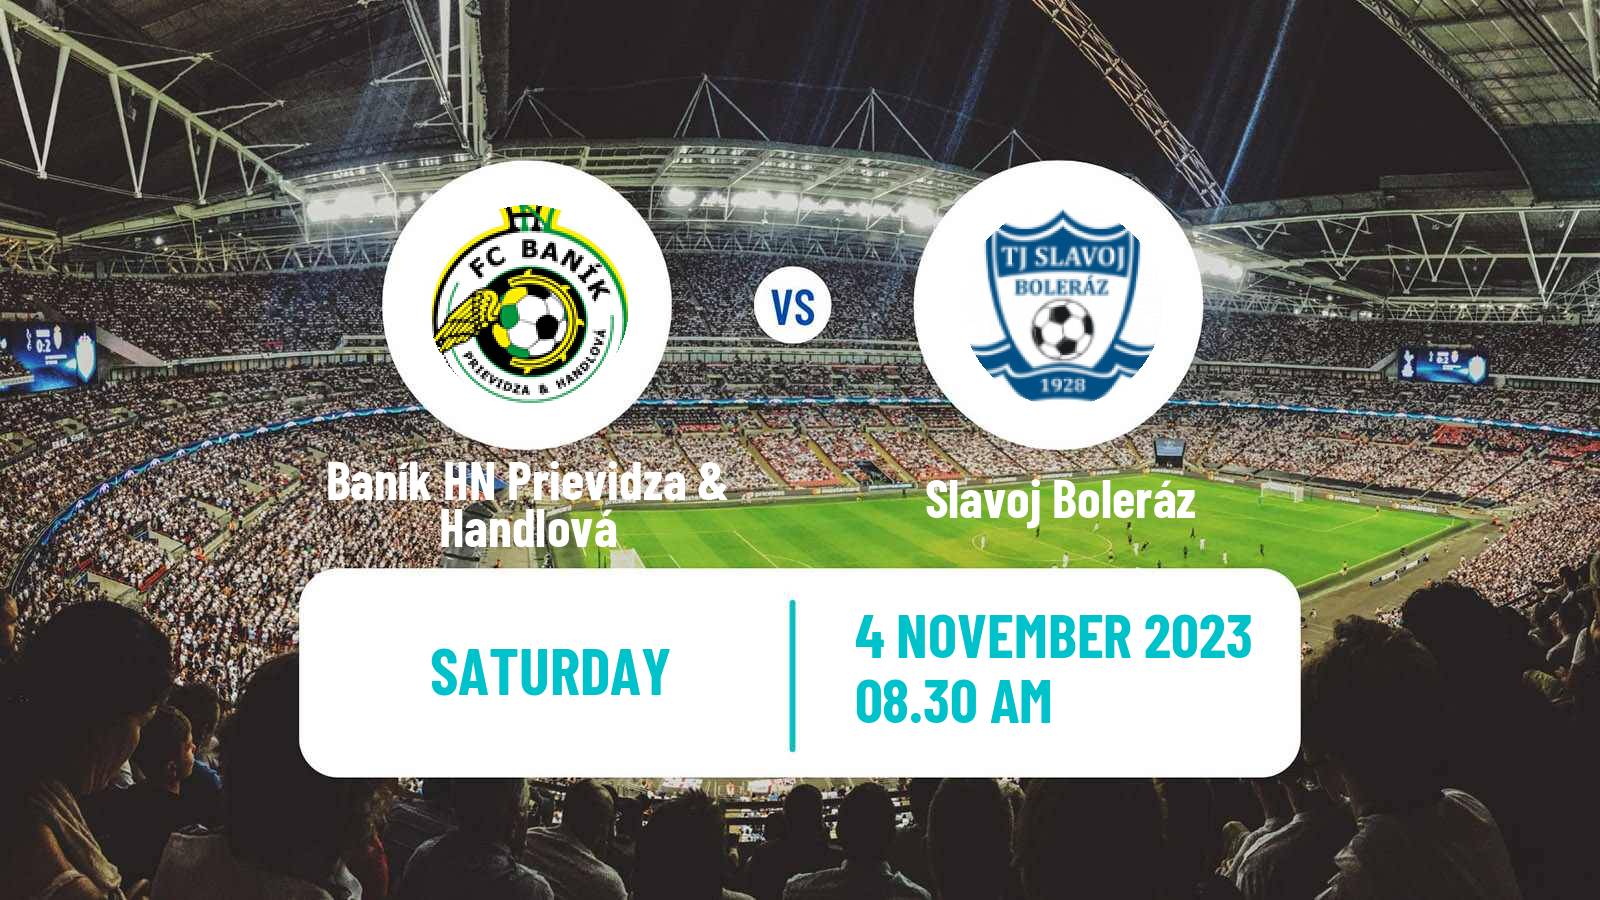 Soccer Slovak 4 Liga West Baník HN Prievidza & Handlová - Slavoj Boleráz